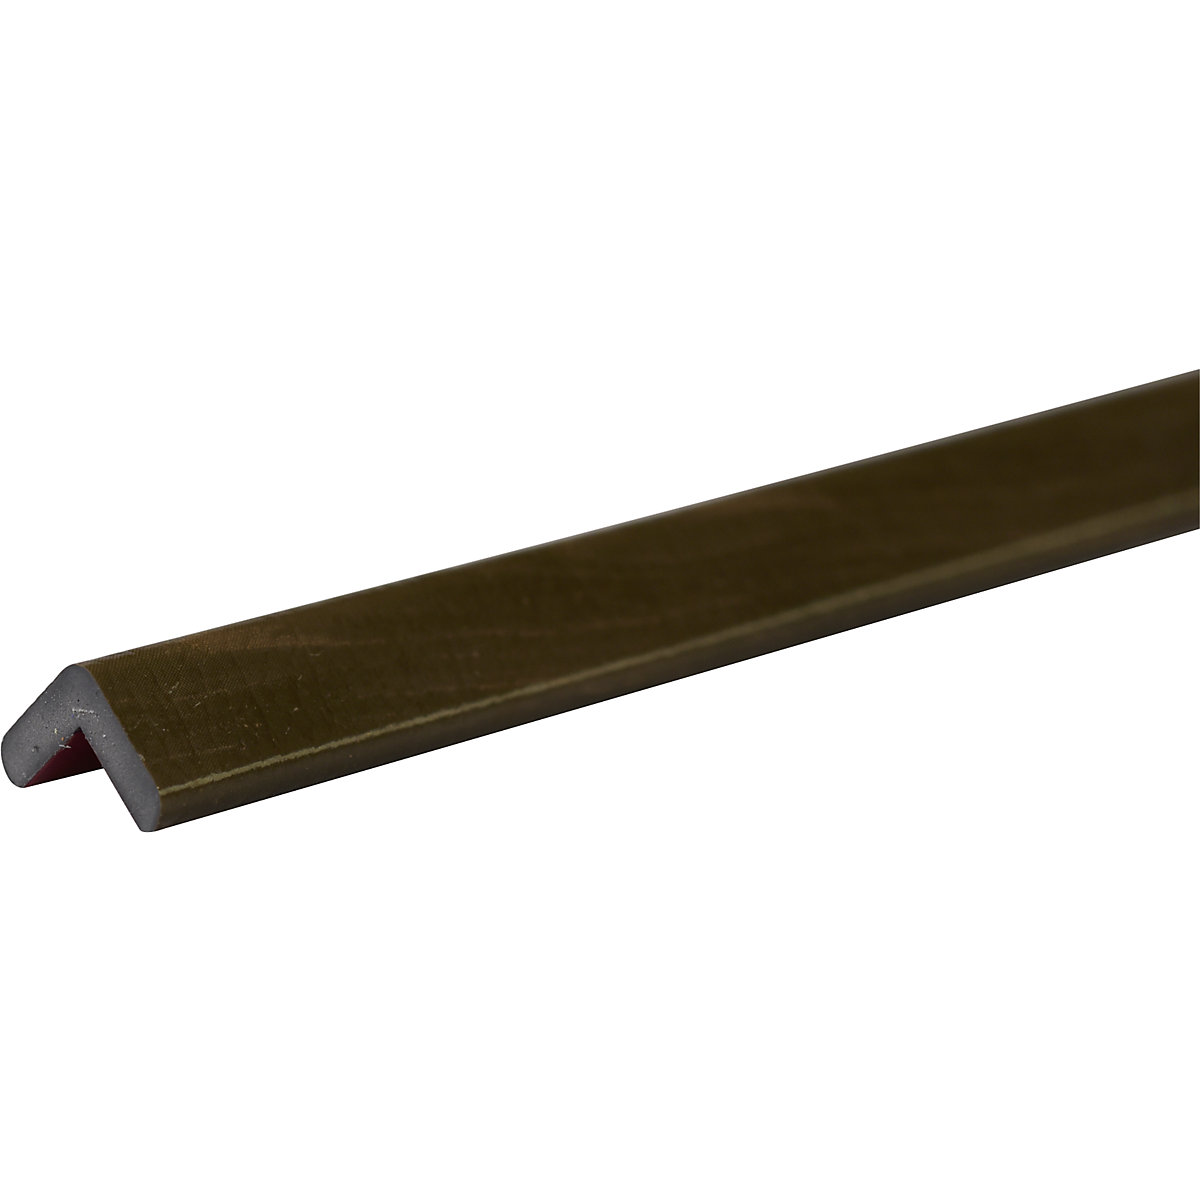 Knuffi®-hoekbescherming – SHG, type E, stuk van 1 m, gecoat hout kaki-28